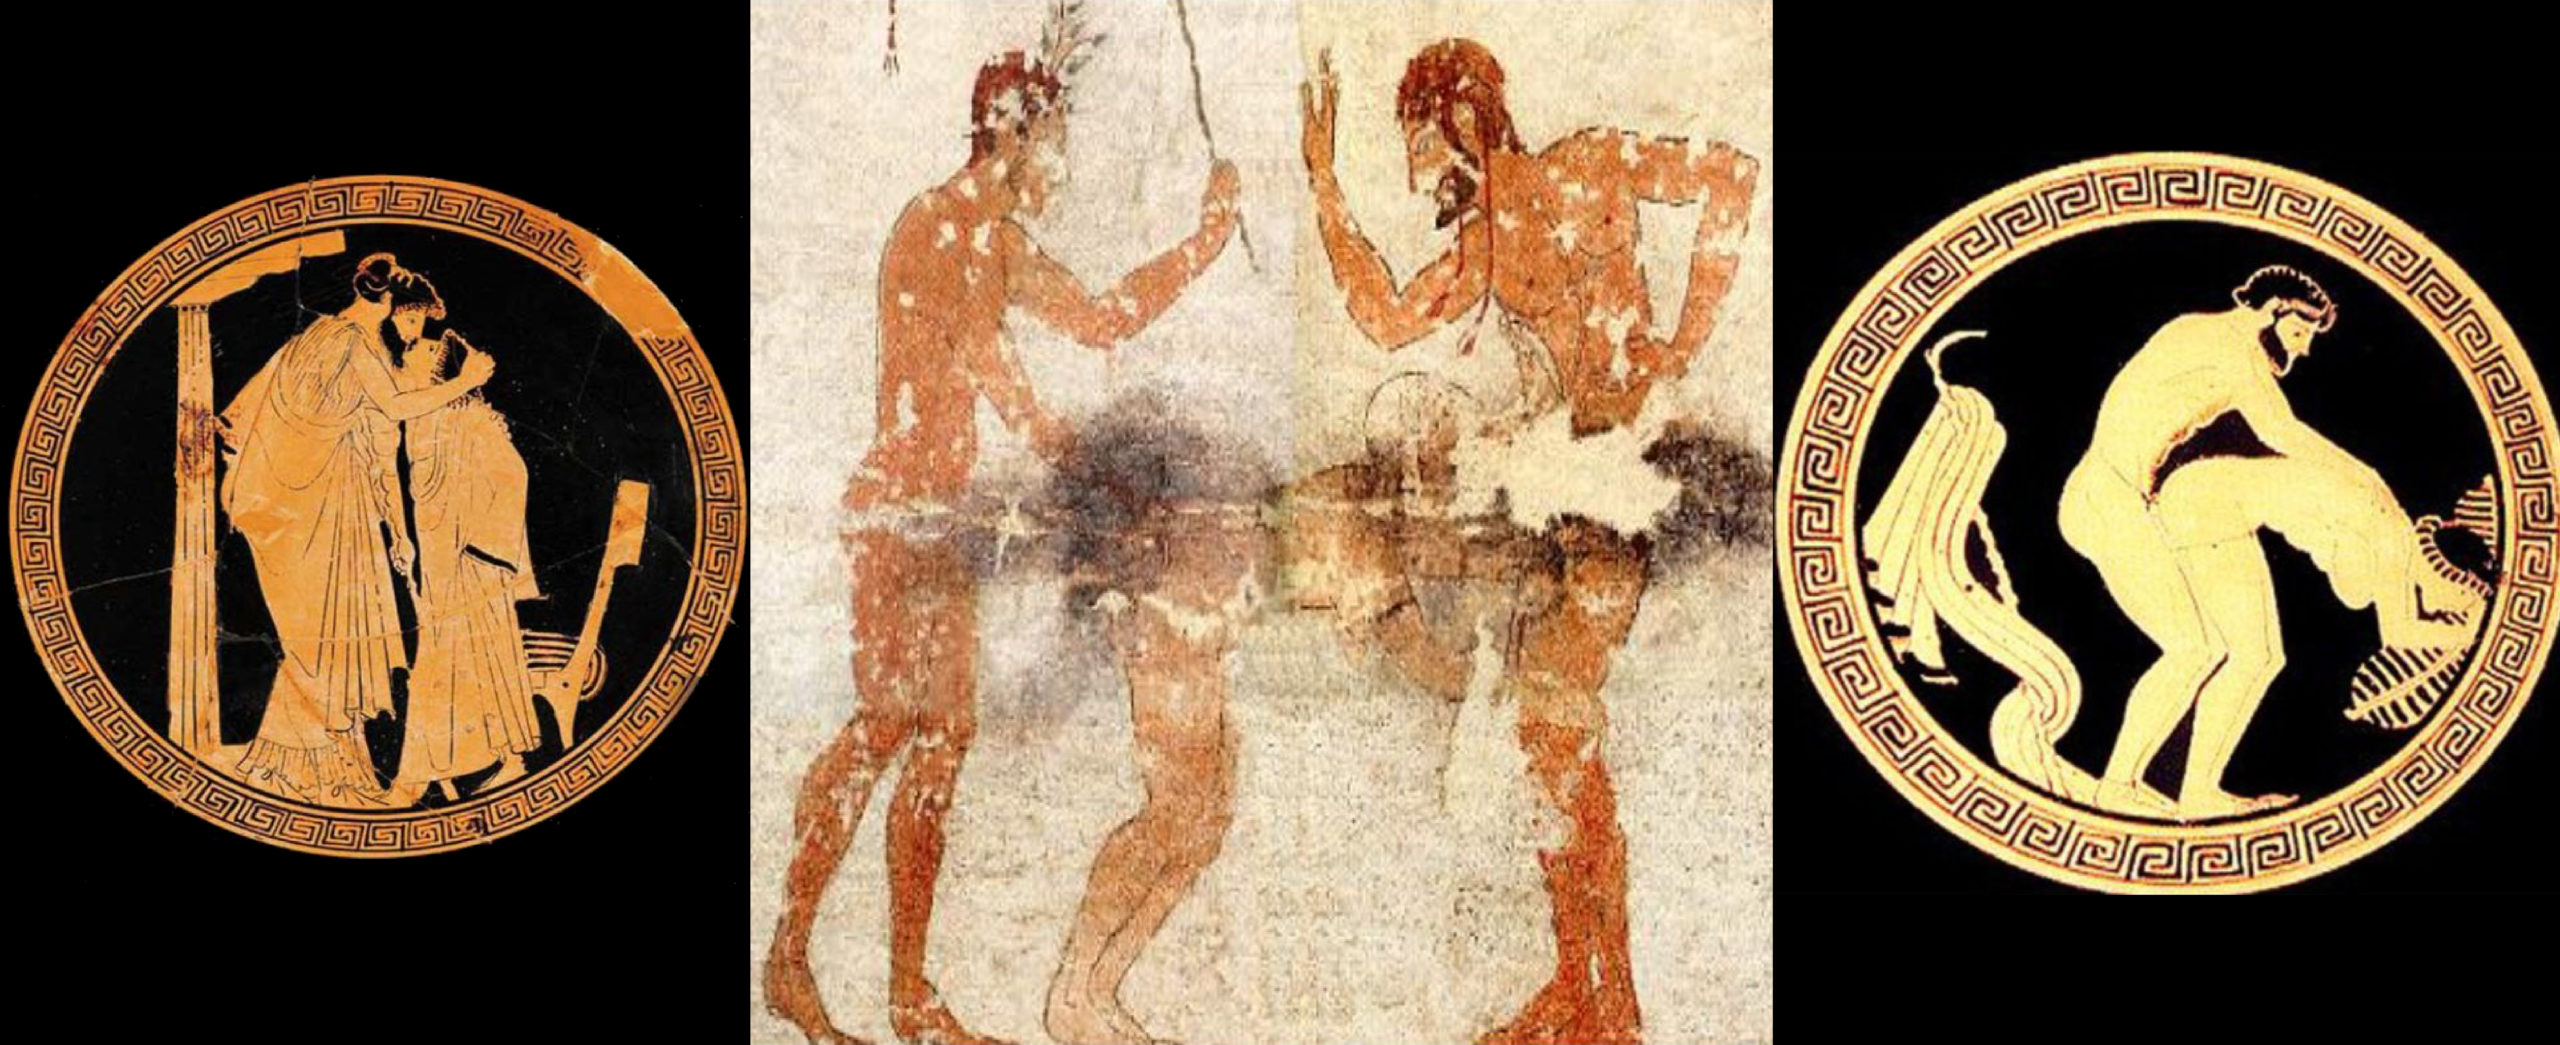 Tarquinia - L'eros per gli etruschi nelle ceramiche del Museo e nella Tomba della Fustigazione